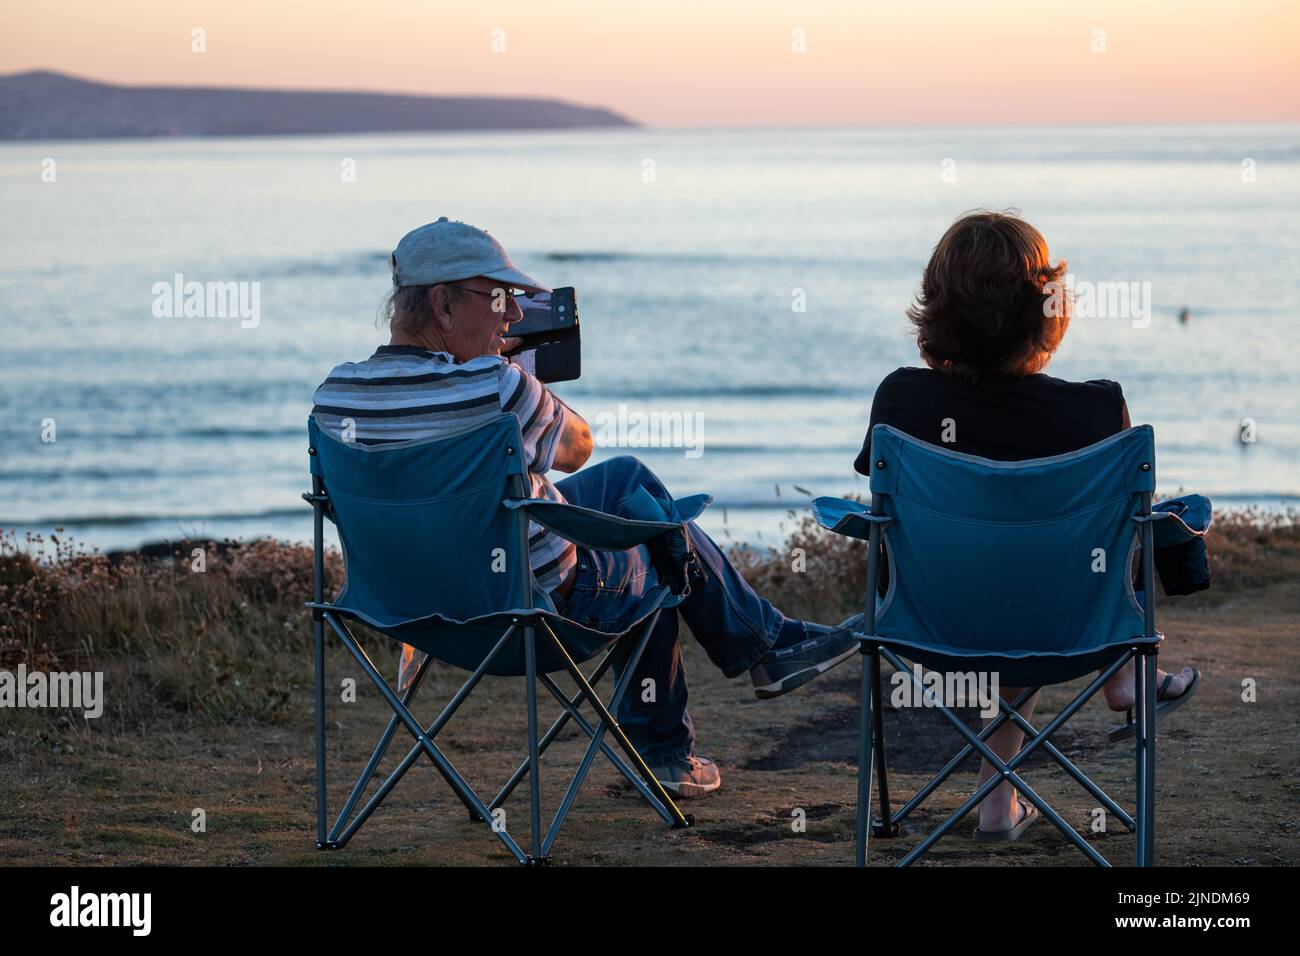 Zwei Personen sitzen auf Campingstühlen, um den Sonnenuntergang in Godrevy, Cornwall, Großbritannien, zu beobachten und zu fotografieren Stockfoto